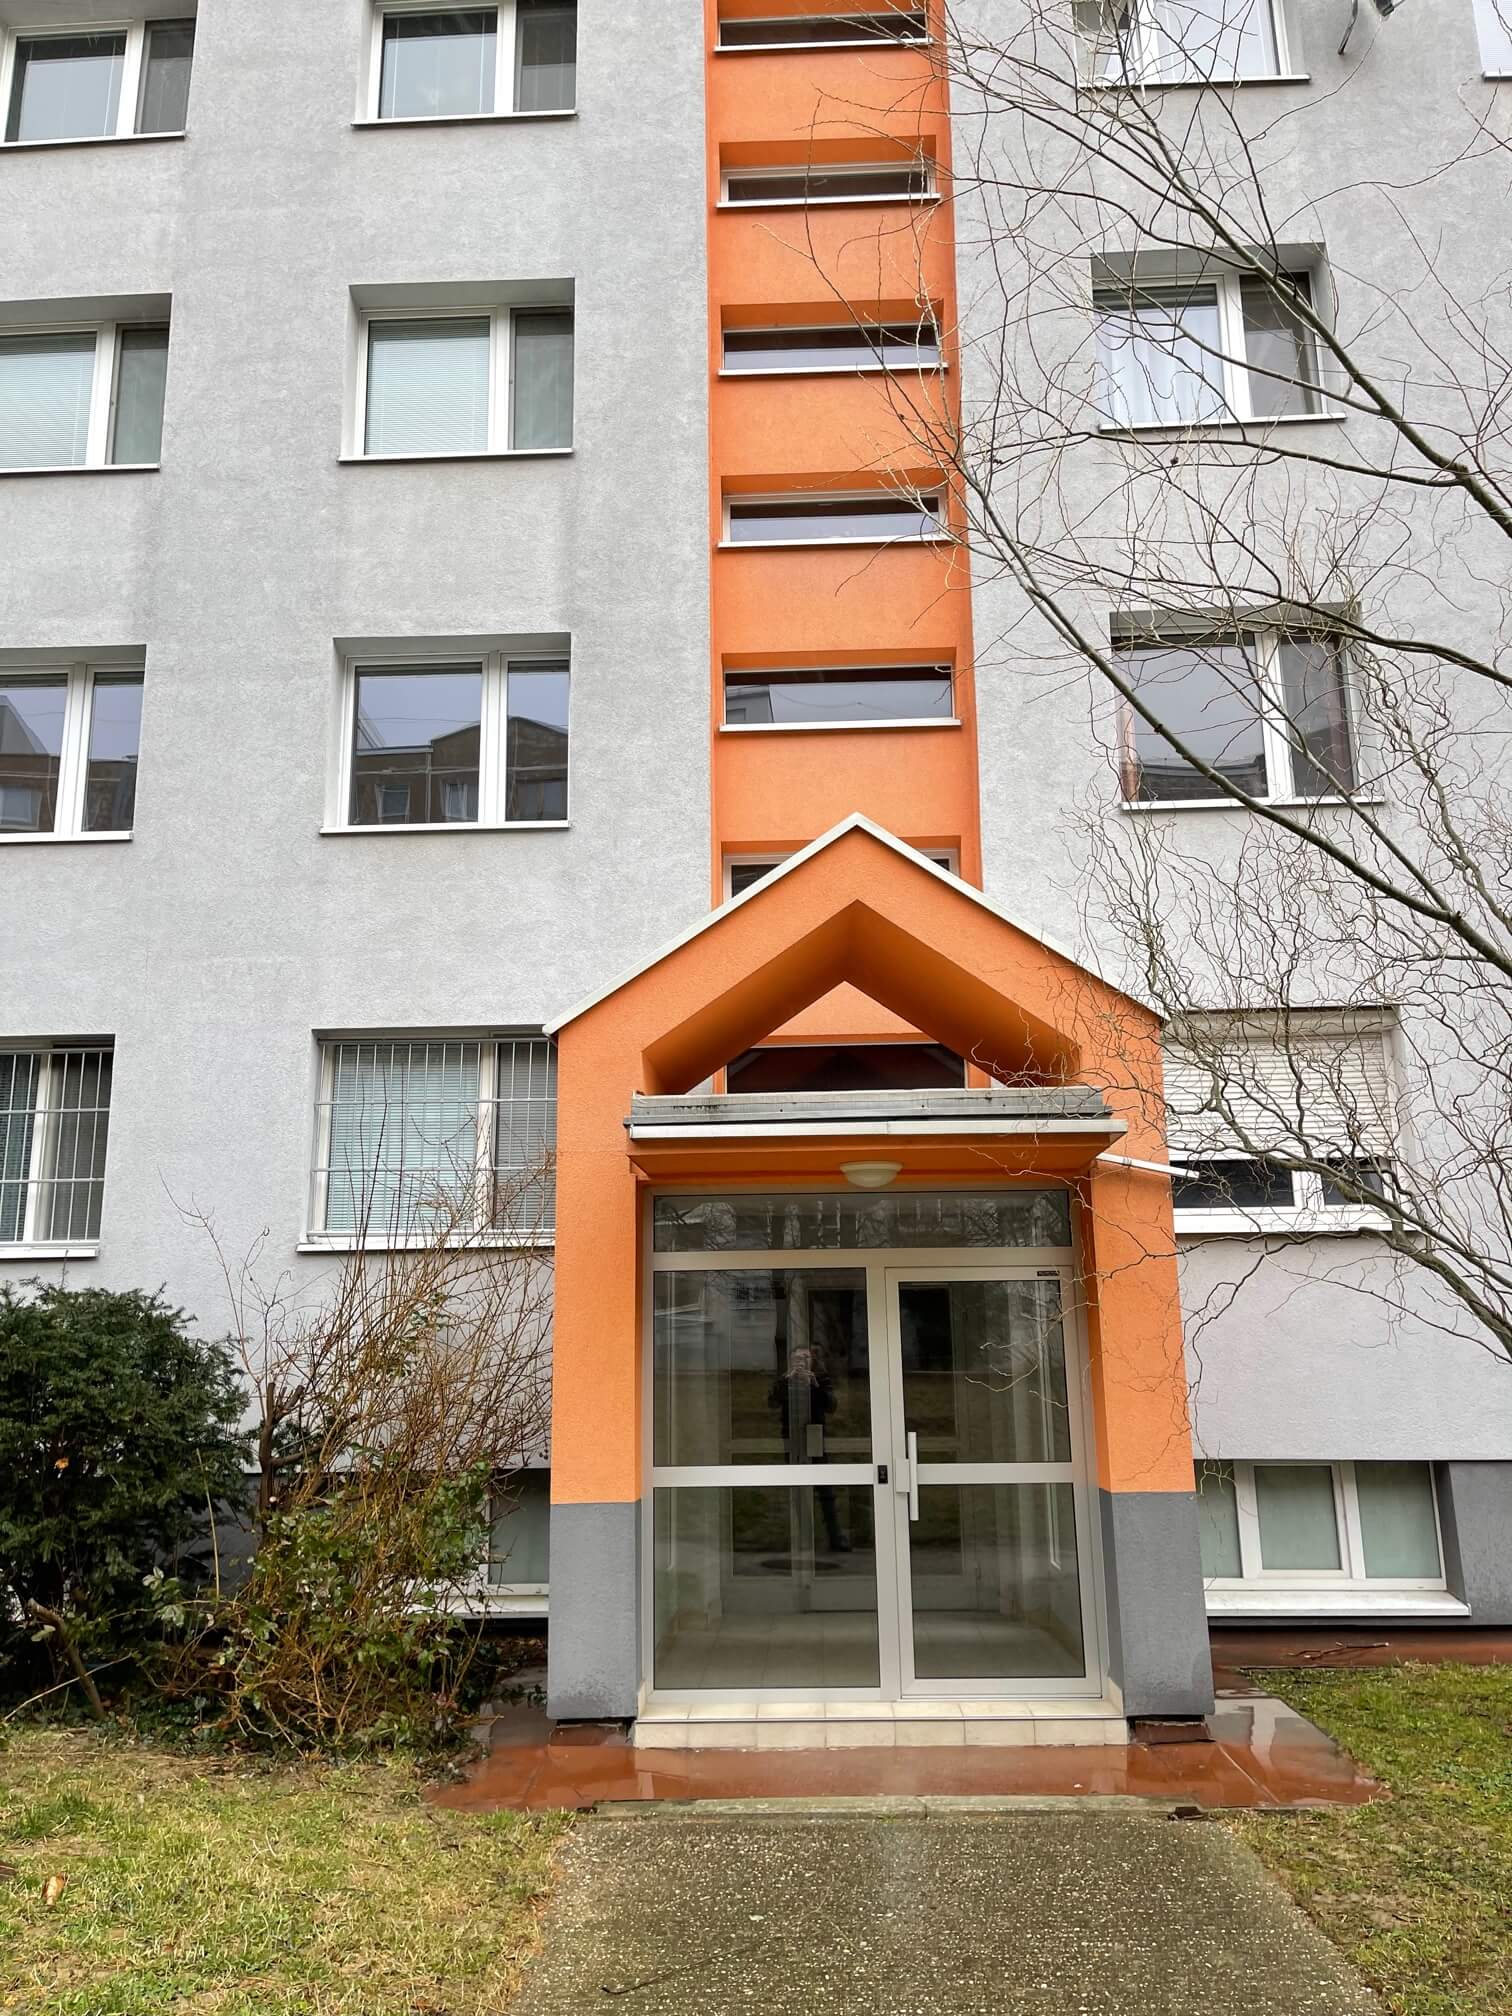 Prenajaté: Izby na prenájom v 3 izbovom byte, Karlovka, Kolísková 6 v Bratislave, 300€ izba, izba má 20m2 s  balkónom,-12